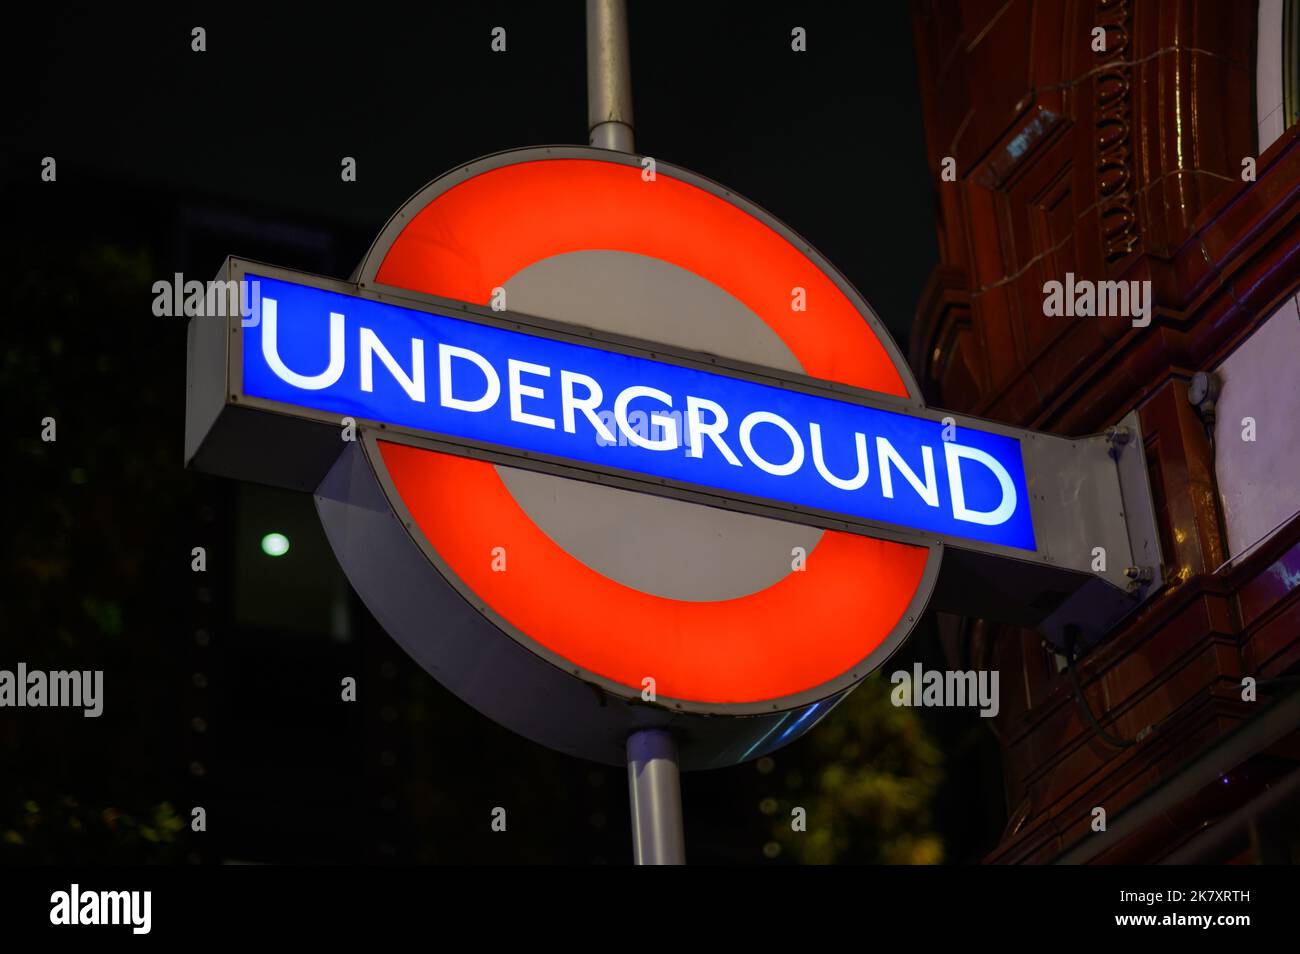 LONDON - November 1, 2020: London Underground Tube Station sign illuminated at night Stock Photo